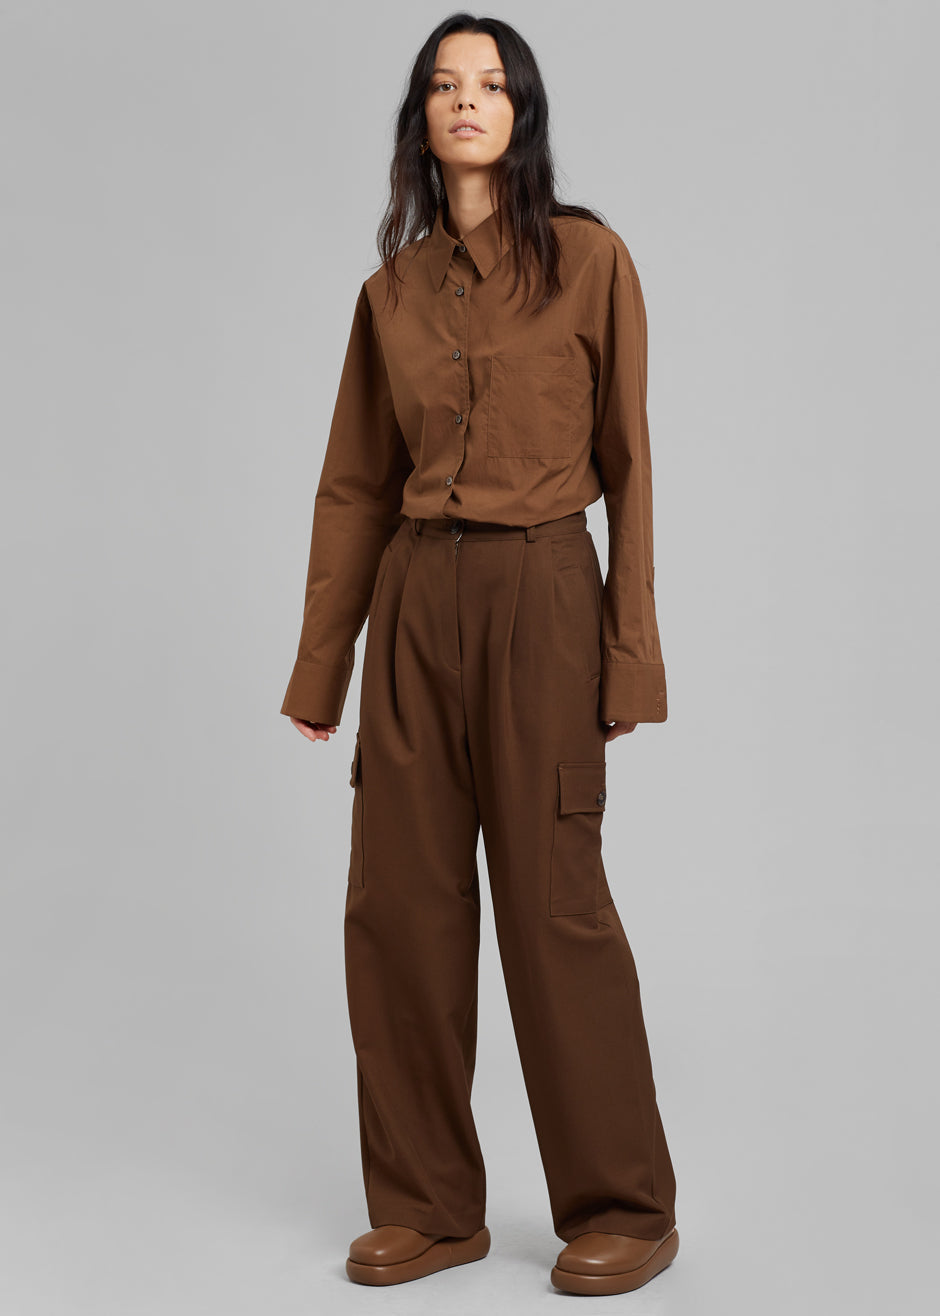 Maesa Cargo Pants - Brown